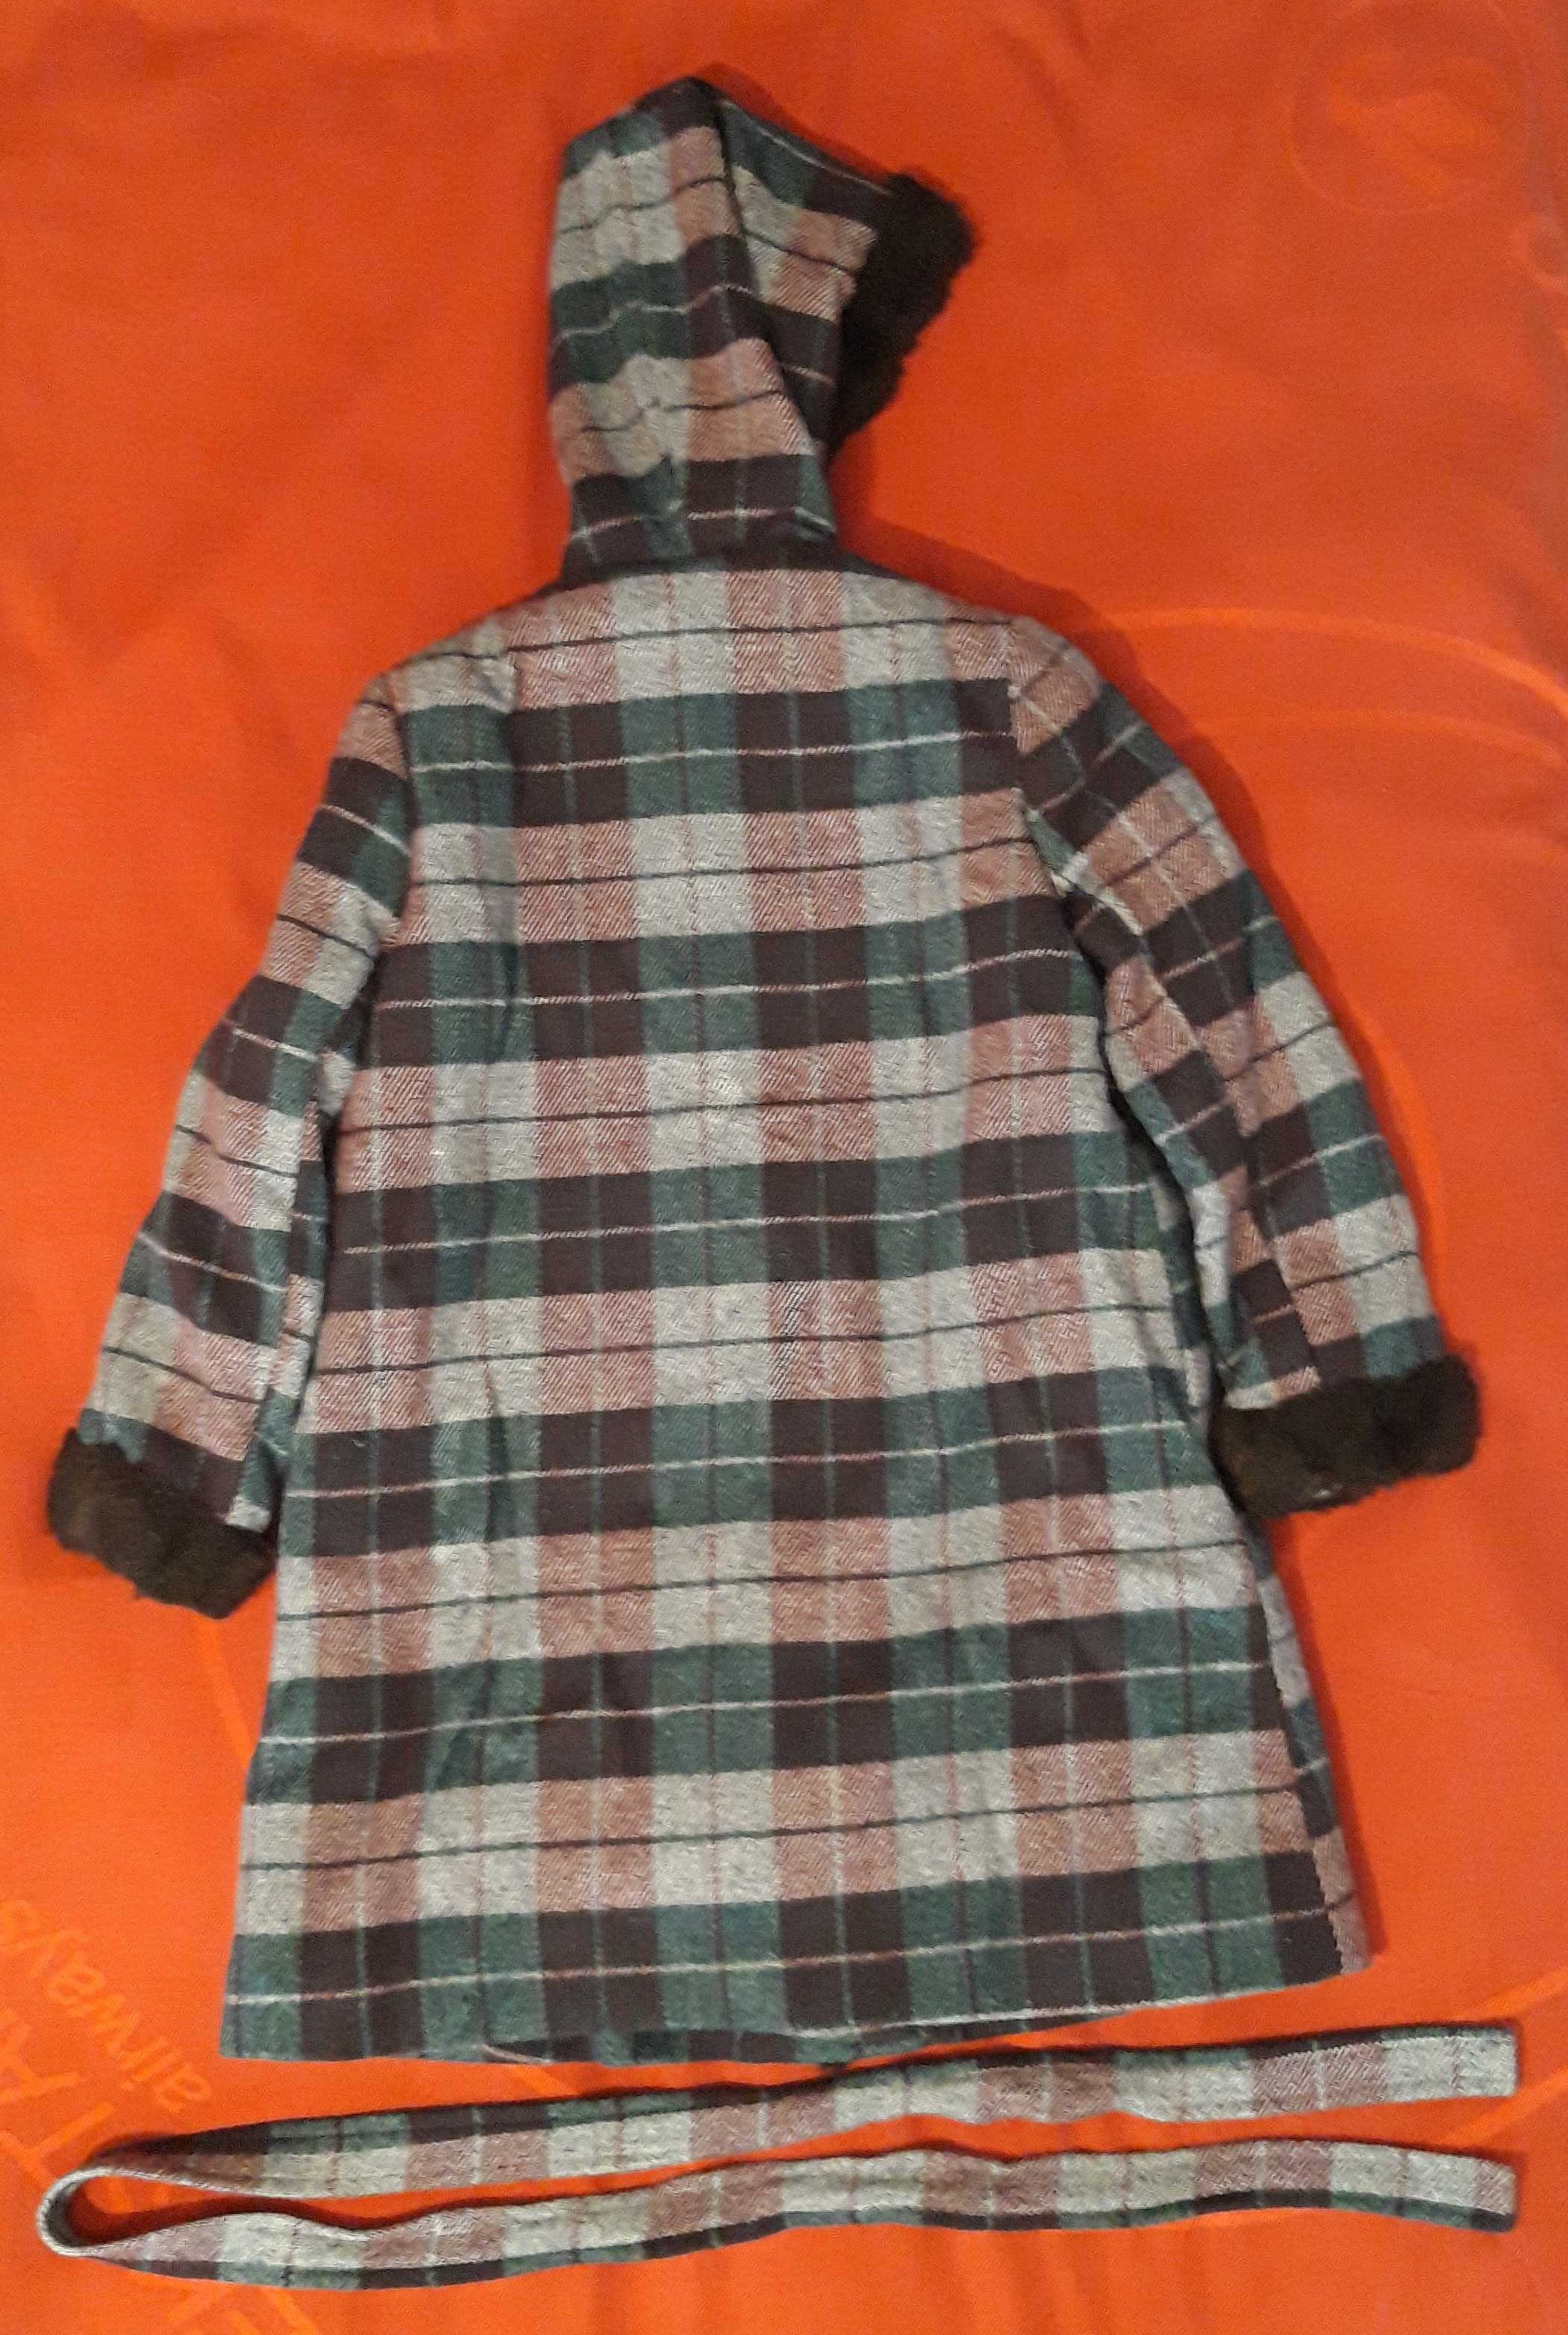 Детское пальто (новое, импортное, теплое, с доставкой)